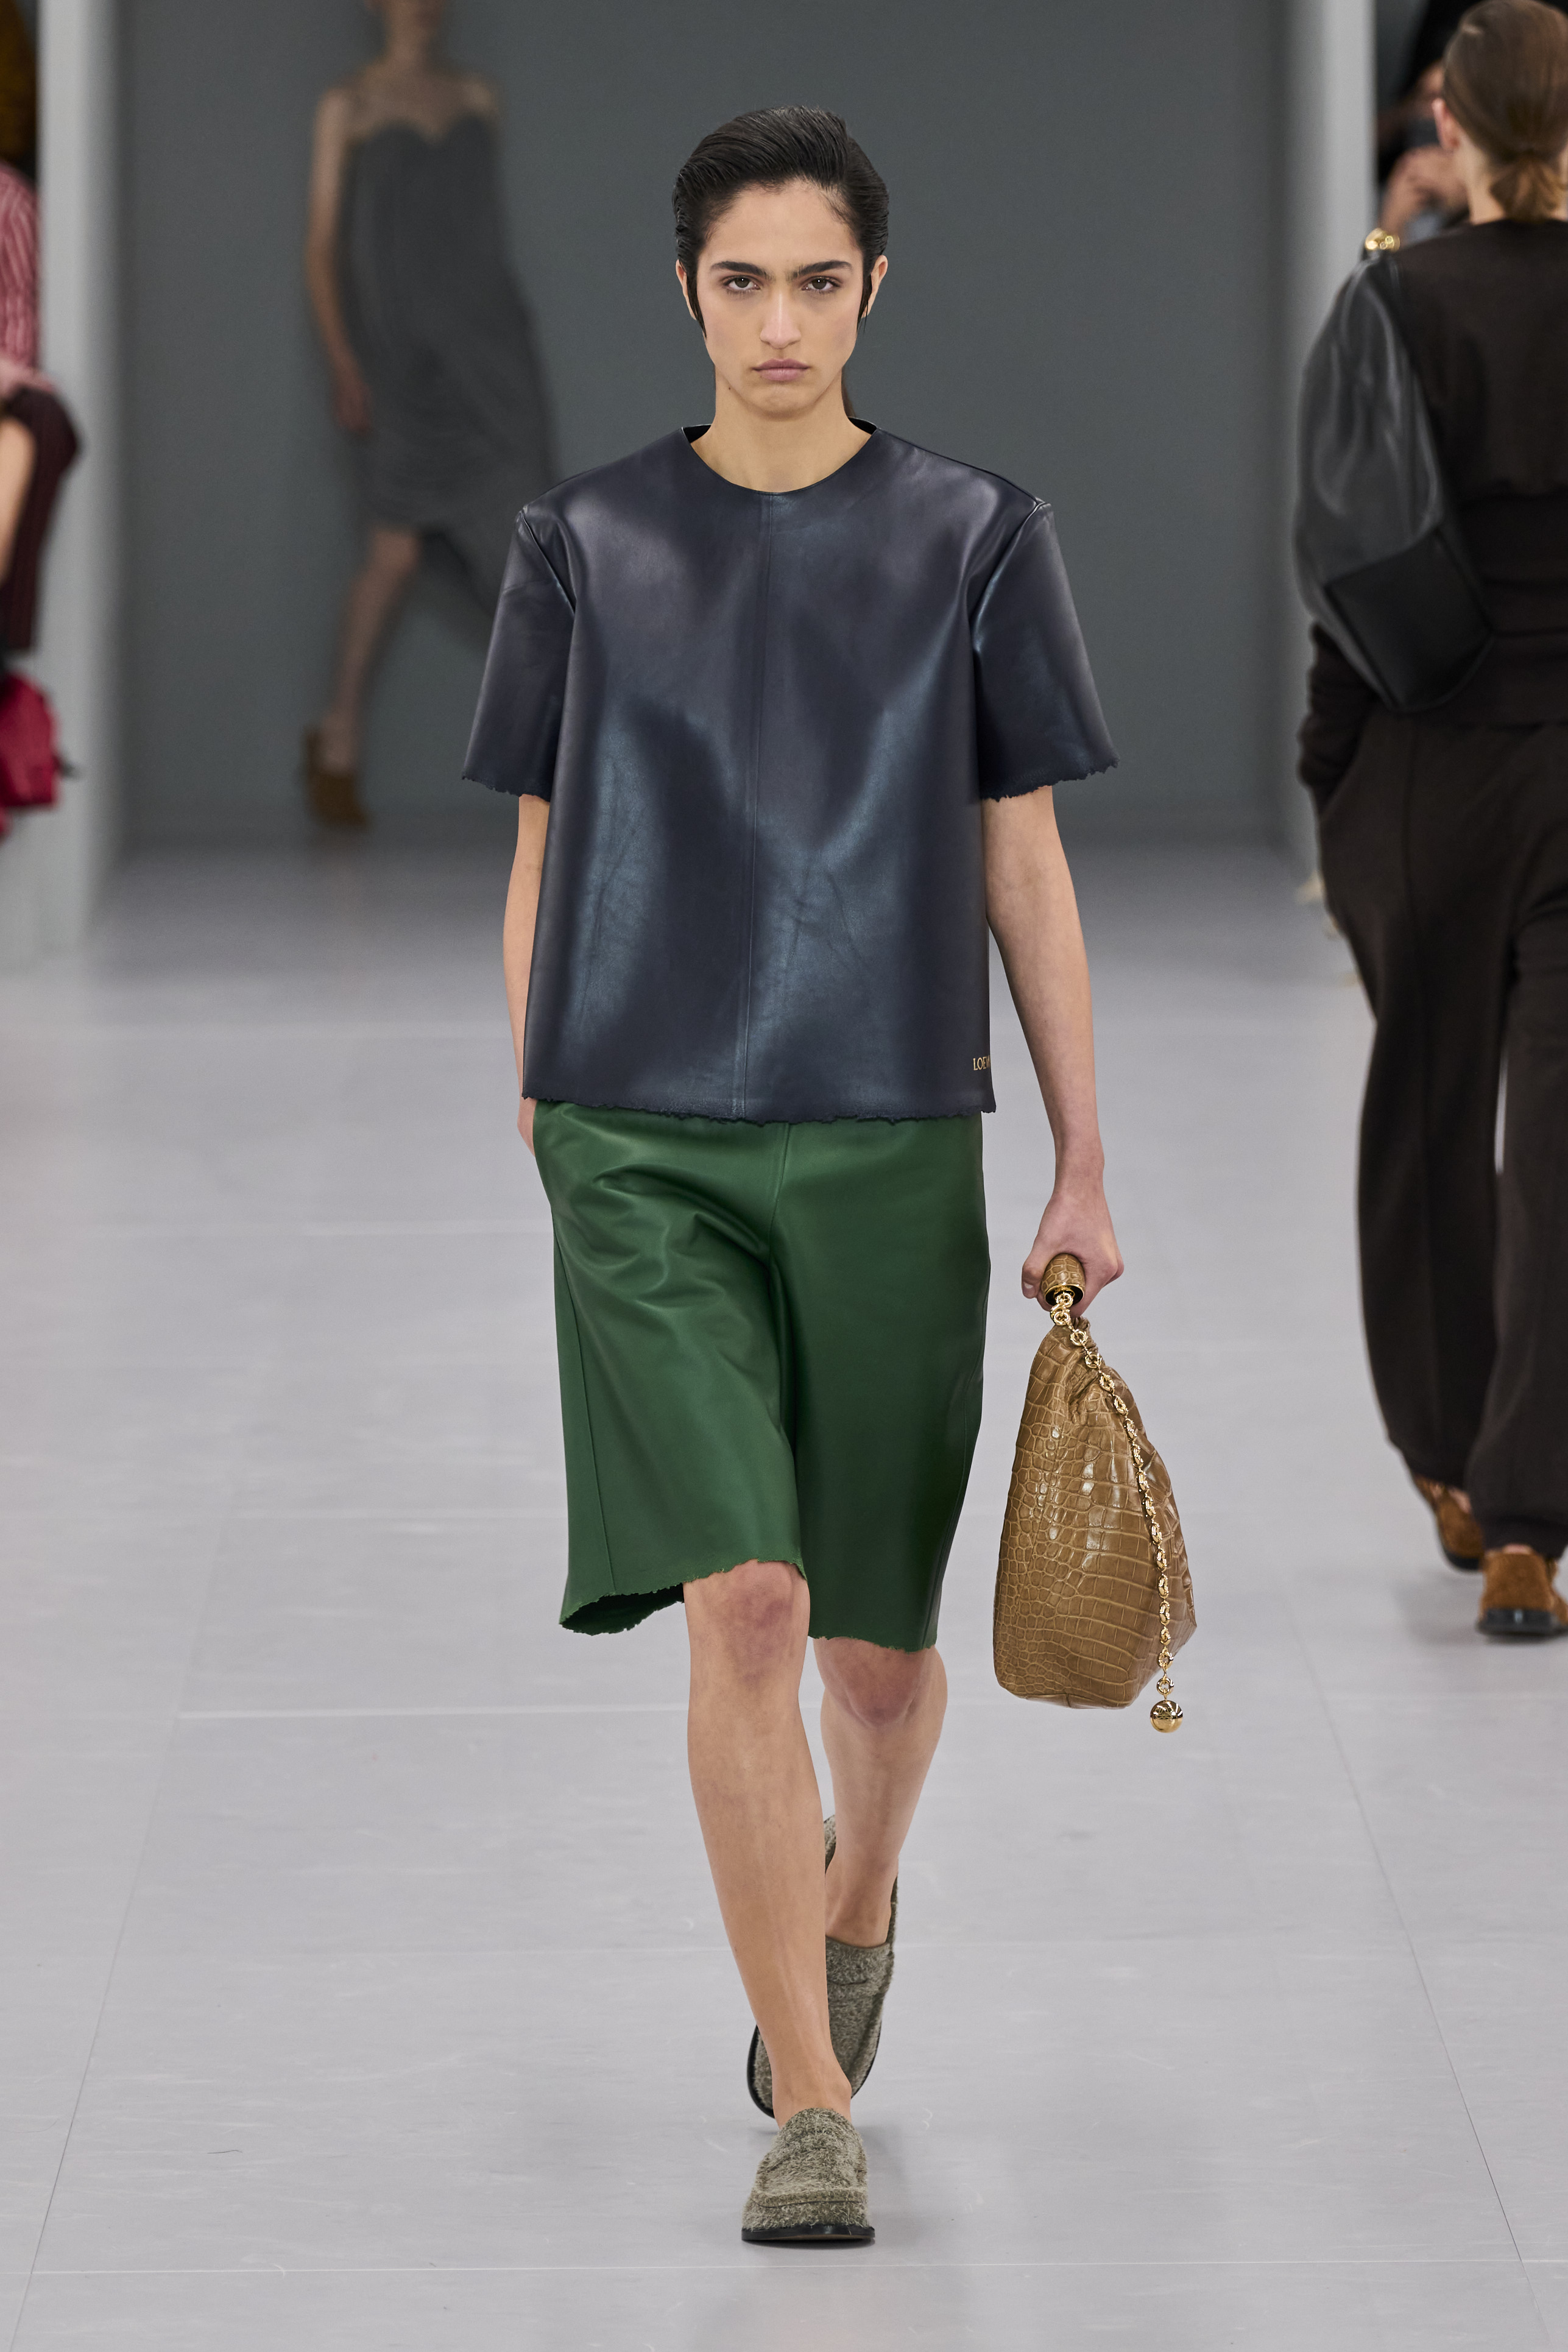 Βερμούδες: Το fashion κομμάτι της άνοιξης που θα φορέσεις με flat αλλά και με chic πέδιλα